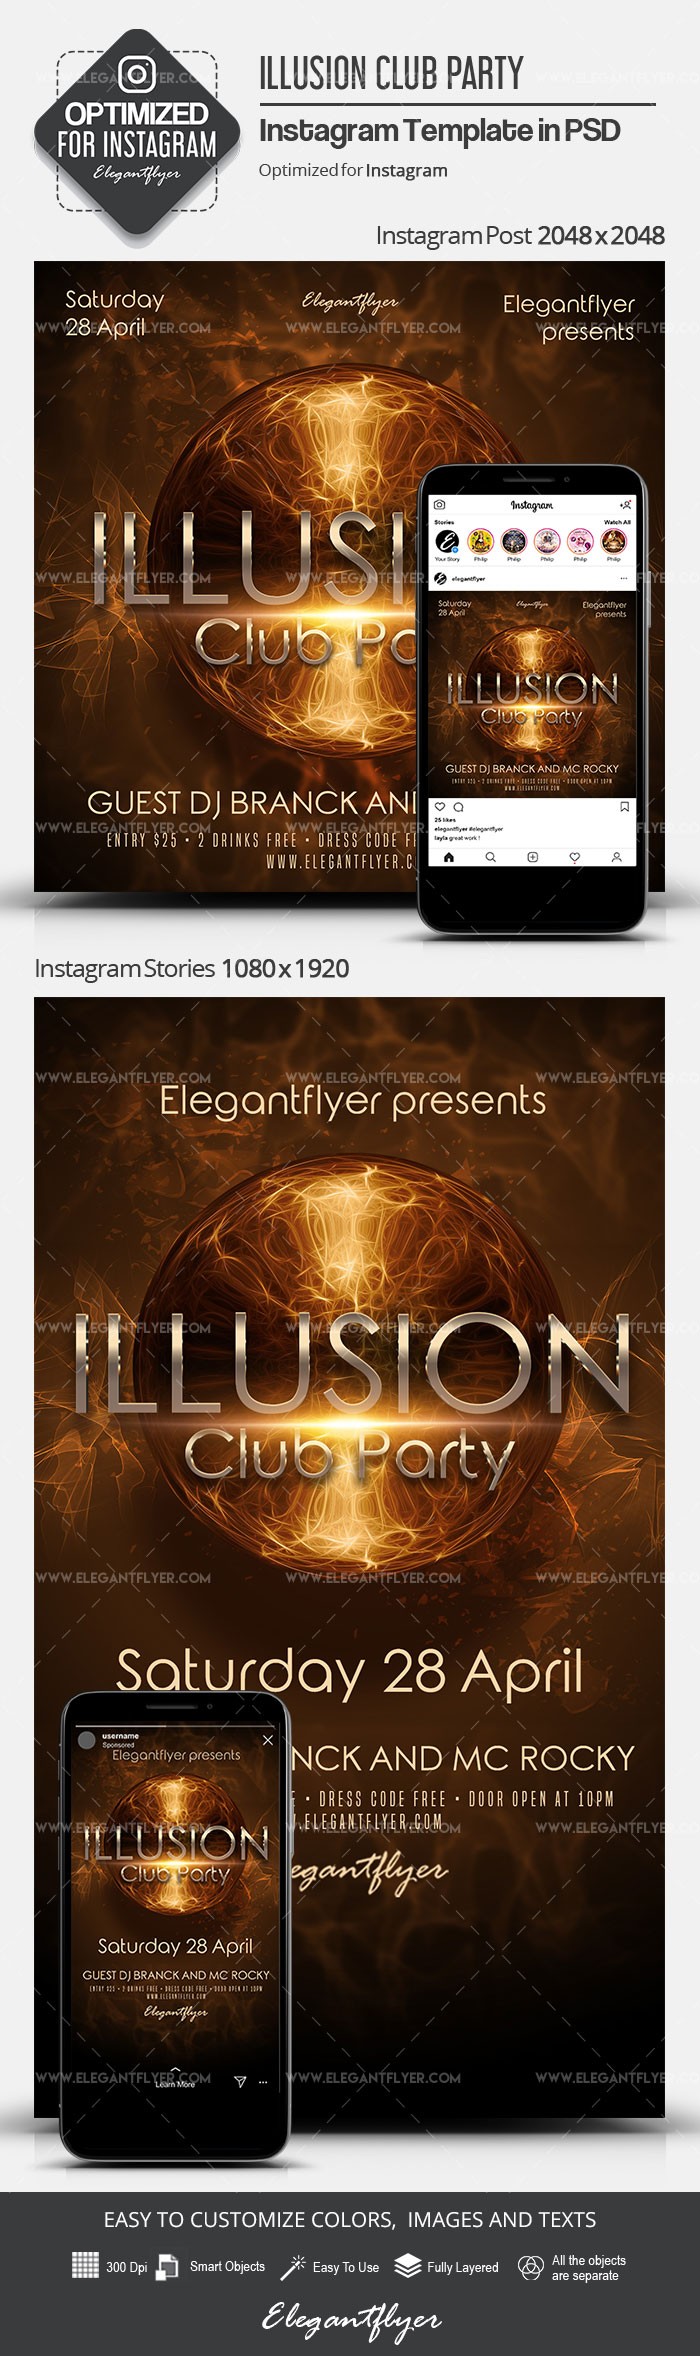 Illusion Club Party by ElegantFlyer